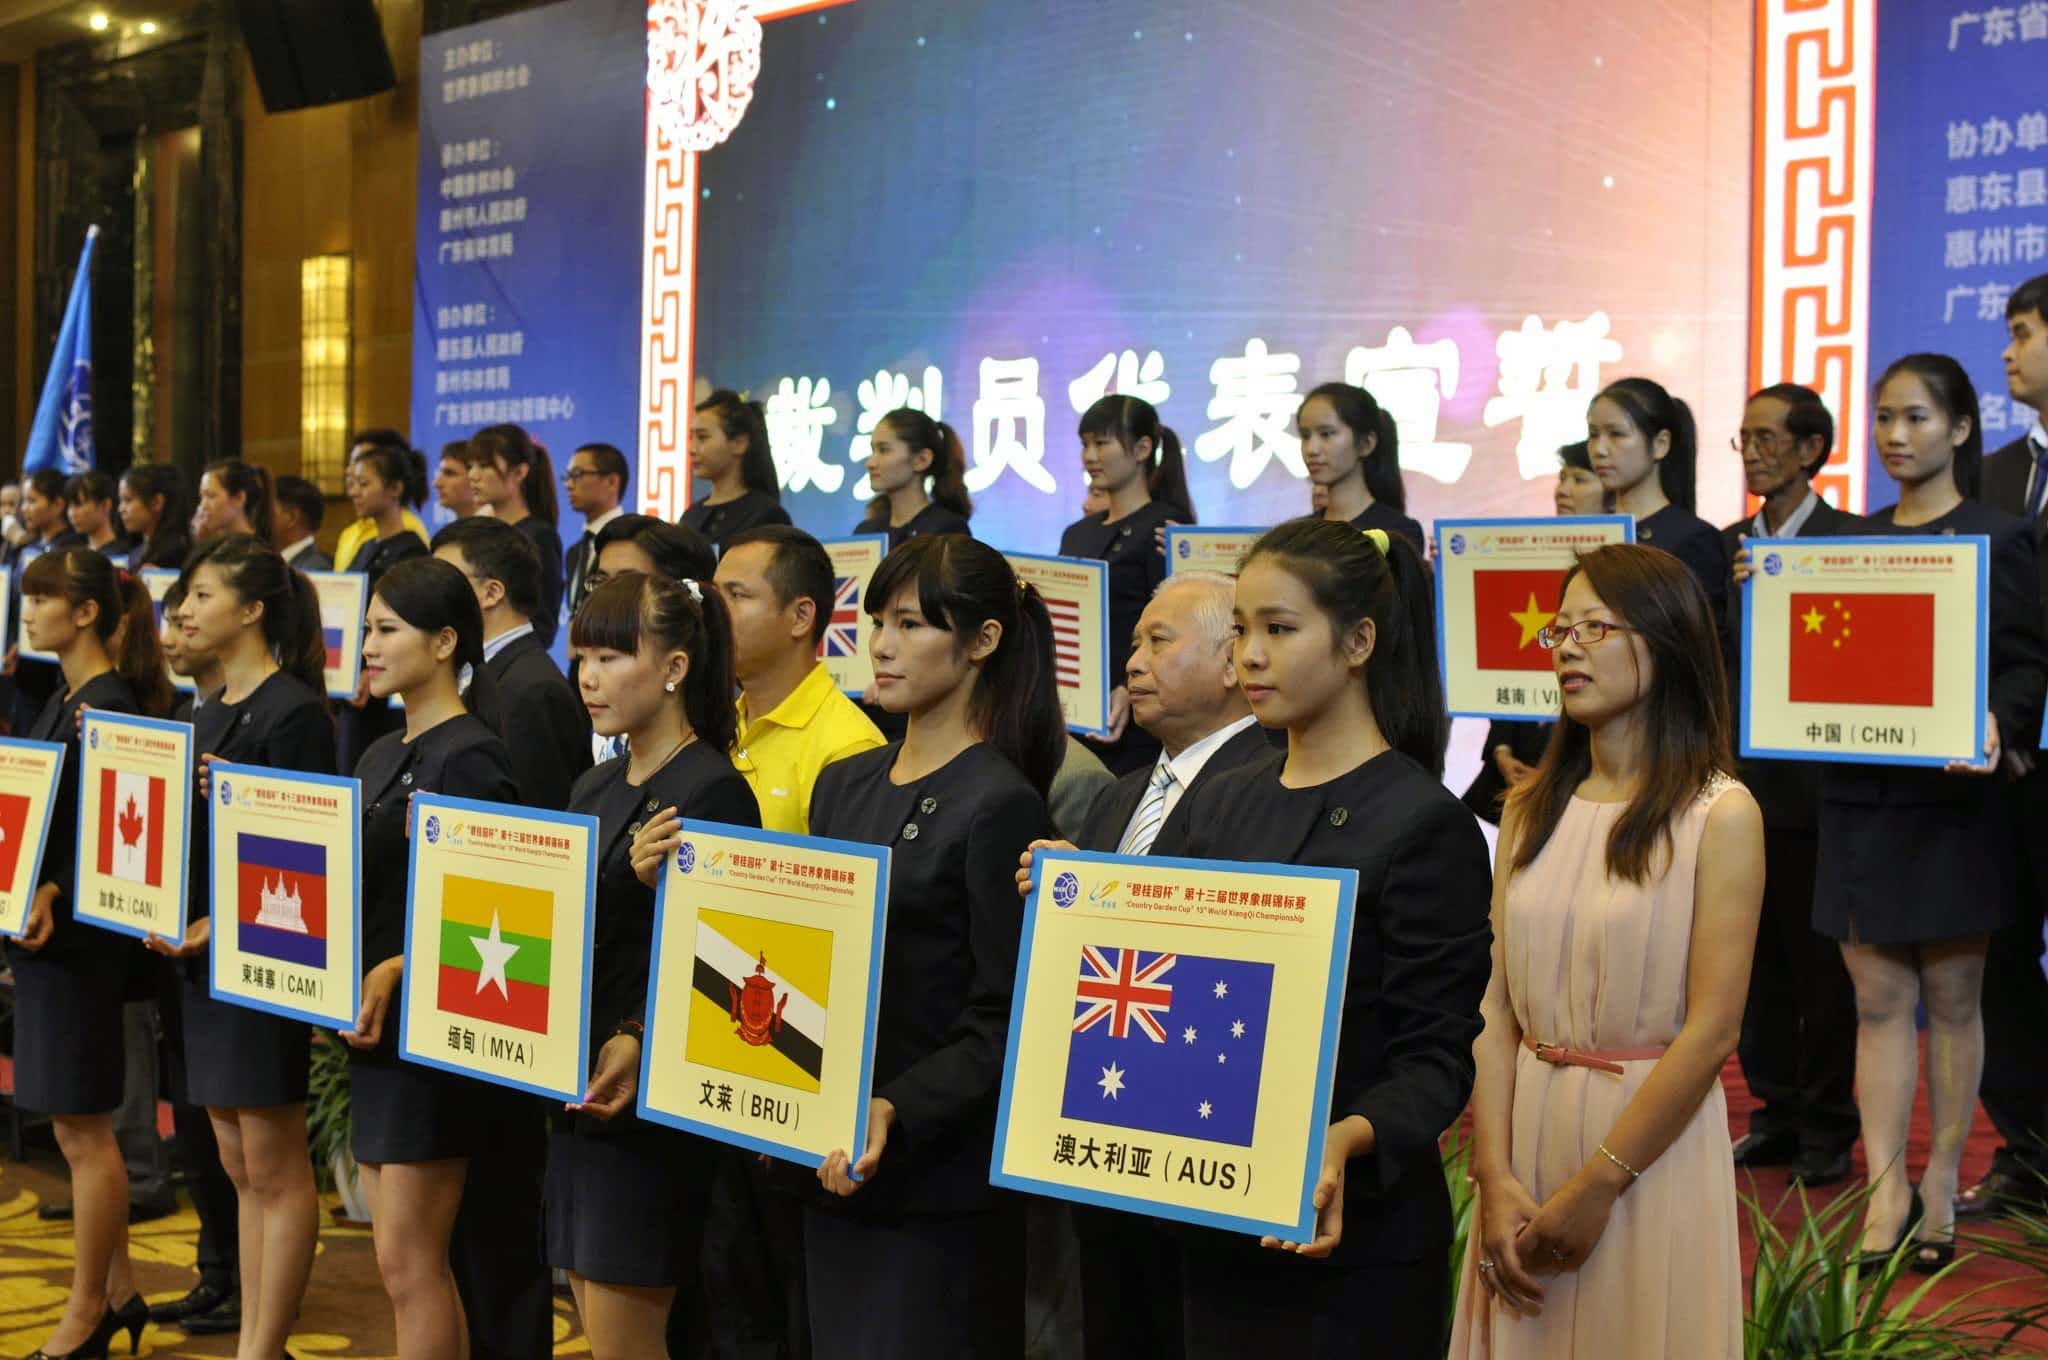 2013 World Xiangqi Championships